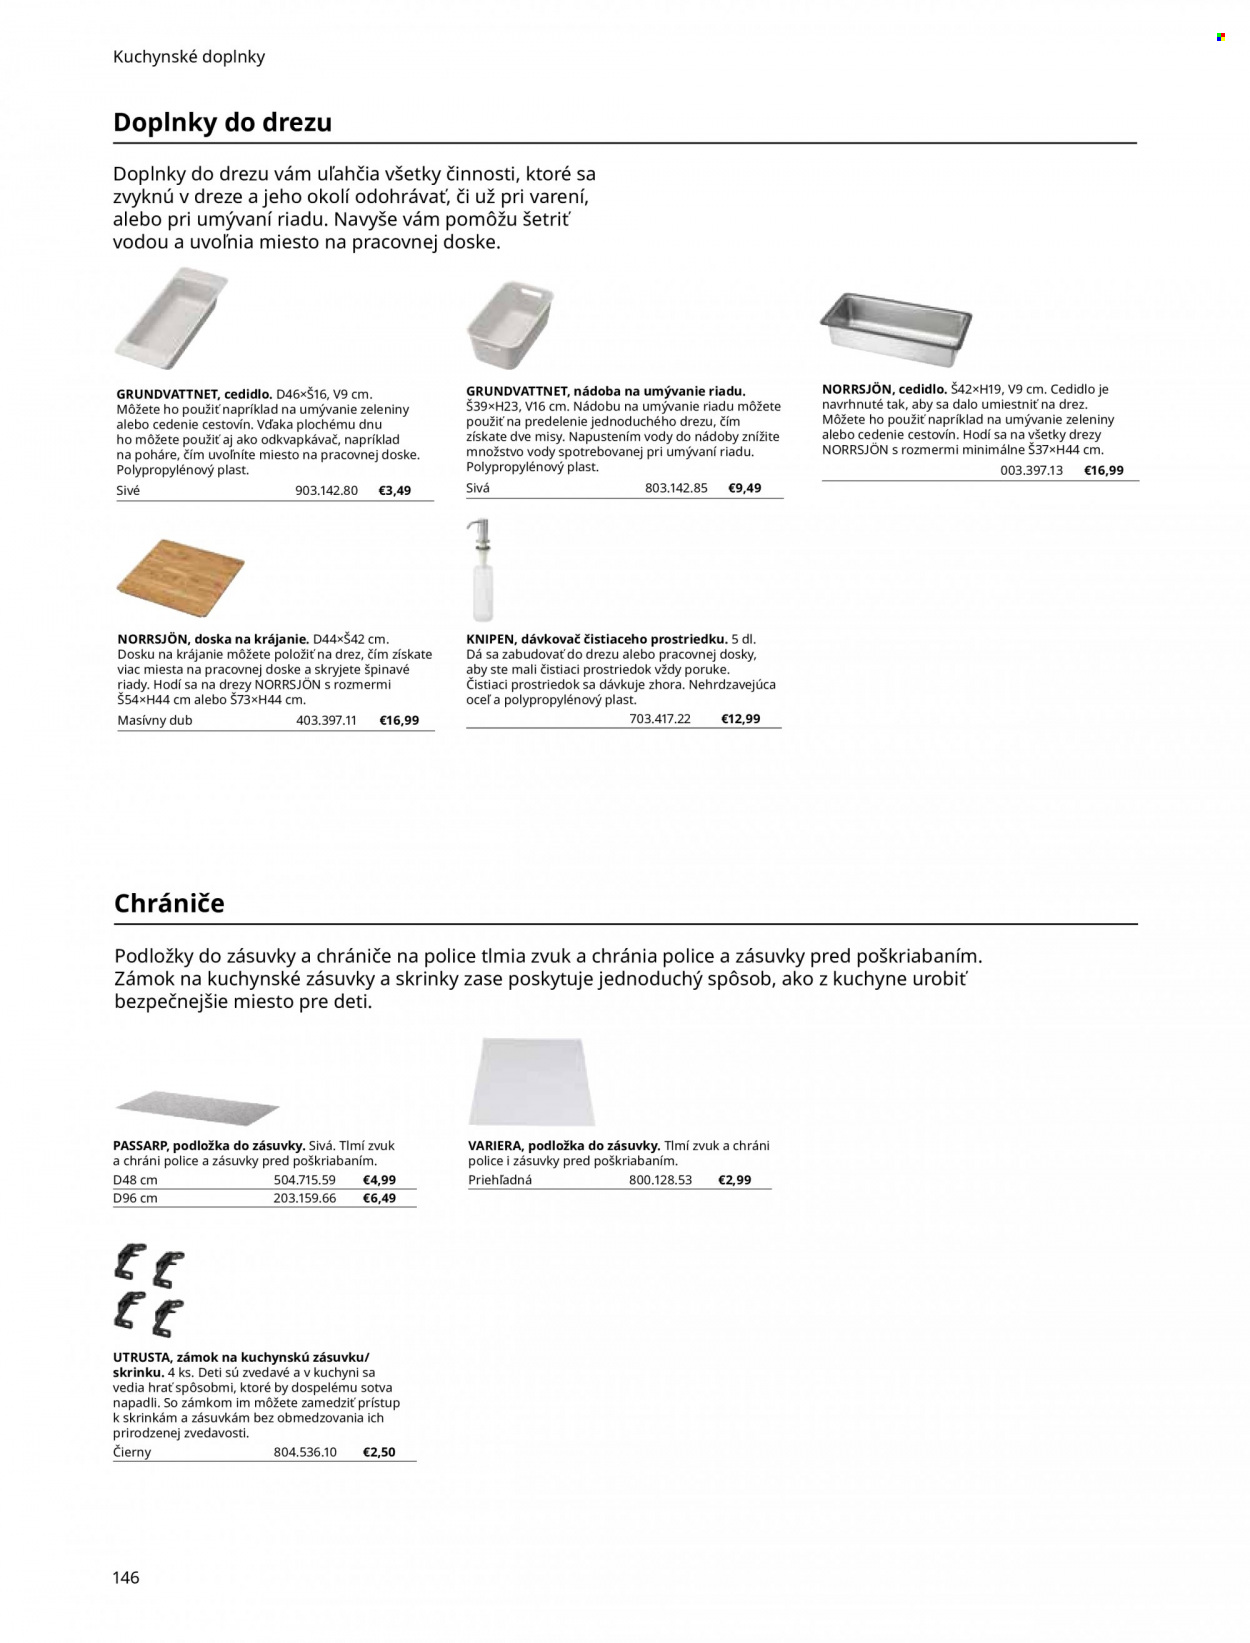 Leták IKEA - Produkty v akcii - podložka, odkvapkávač, nádoba, pohár, misa, doska na krájanie, cedidlo, polica, drez. Strana 146.